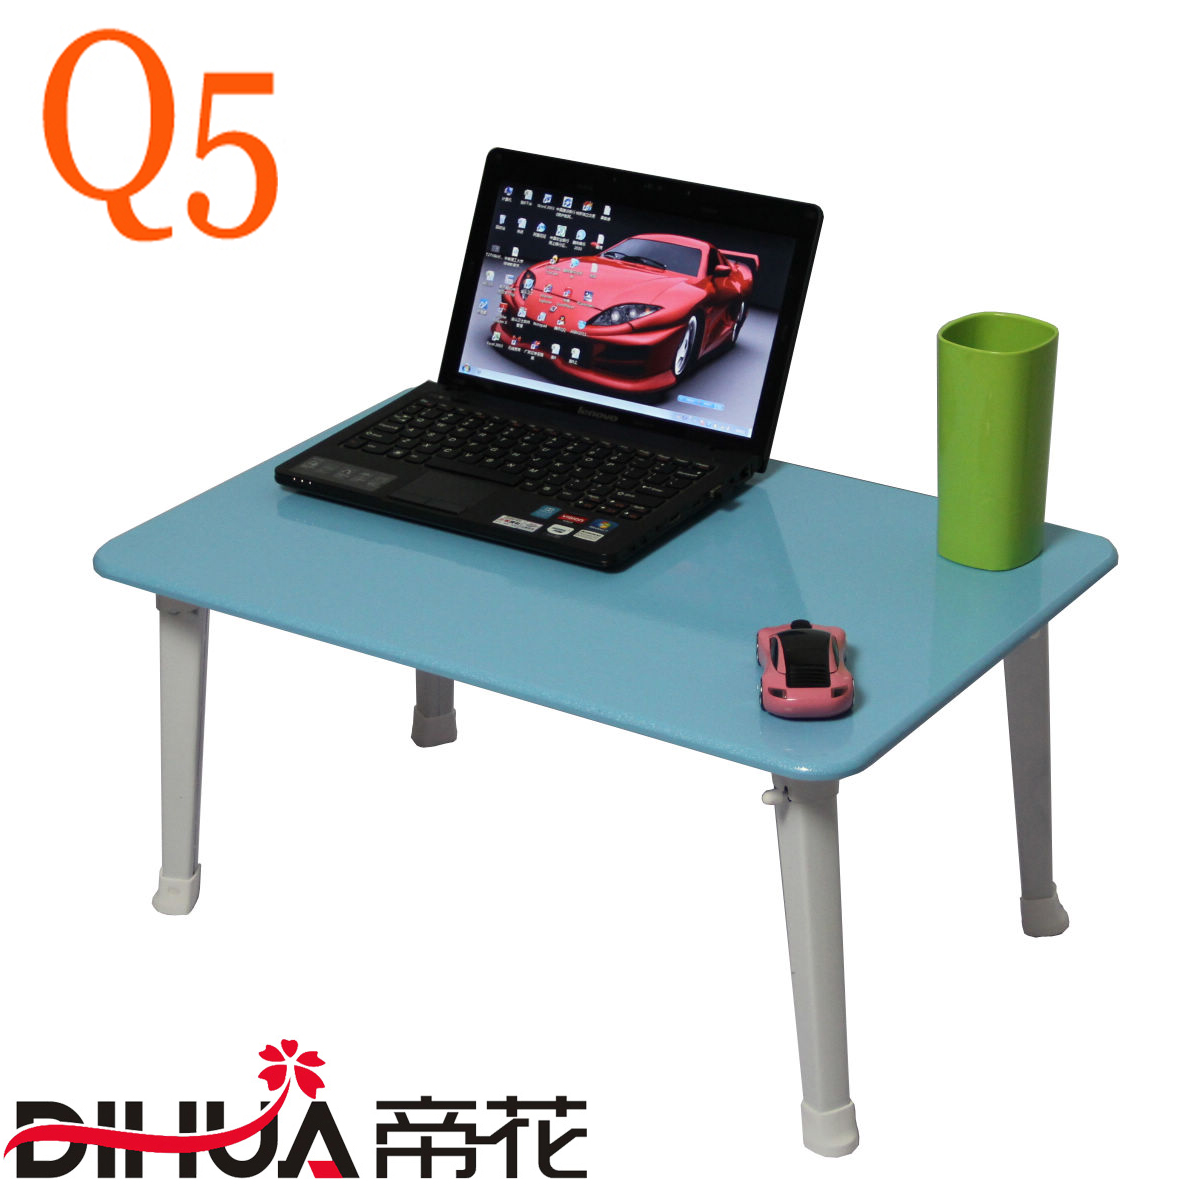 帝花笔记本电脑桌 床上电脑桌 床上折叠电脑台 学生小桌子 Q5~Q3